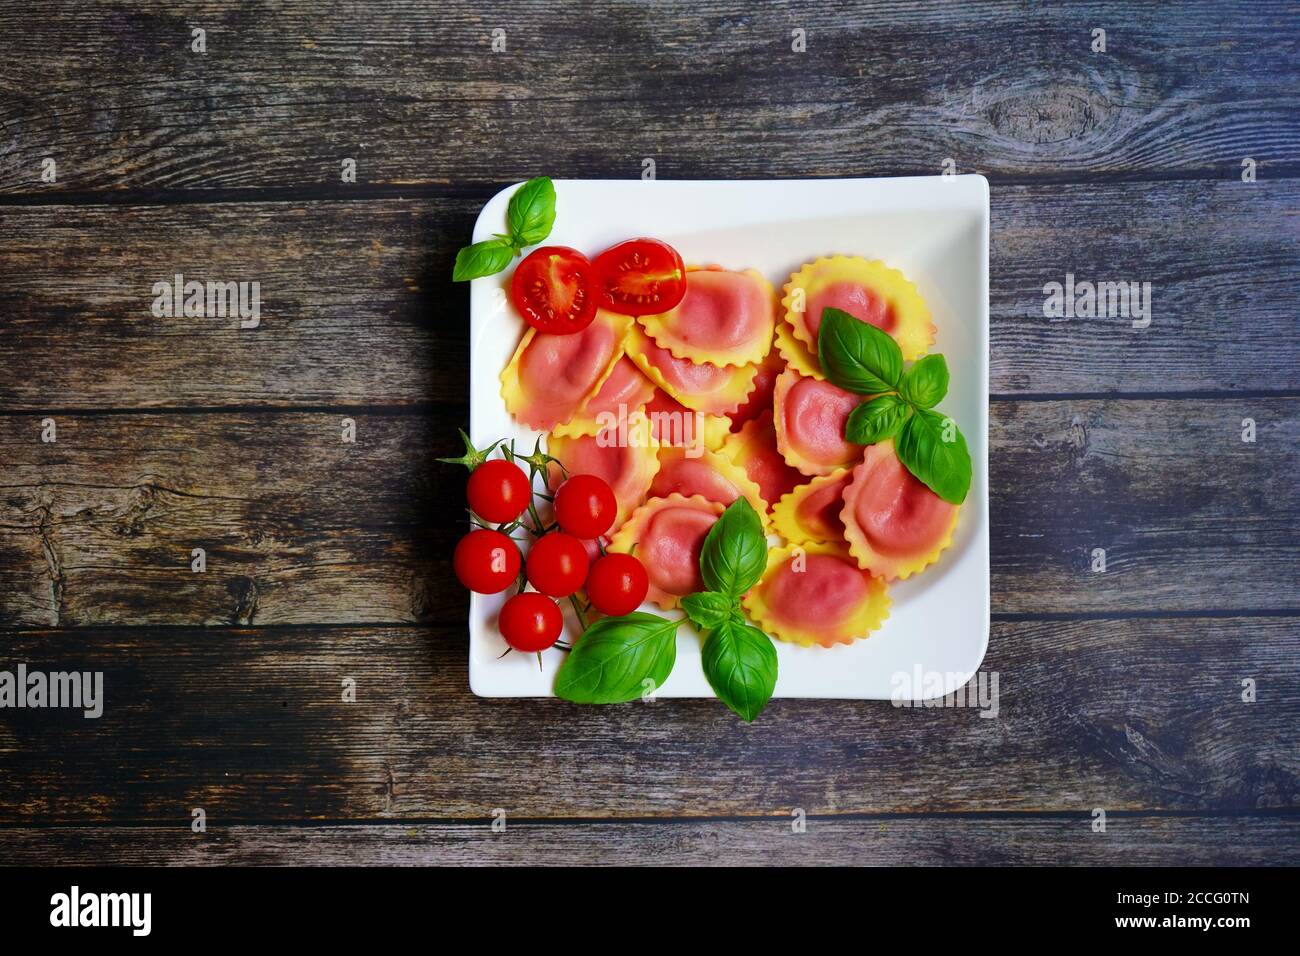 Hausgemachte Pasta / Ravioli gefüllt mit Wurzelrübe auf einem weißen Teller mit Holztisch Hintergrund. Tomaten und frisches Basilikum zur Dekoration. Stockfoto